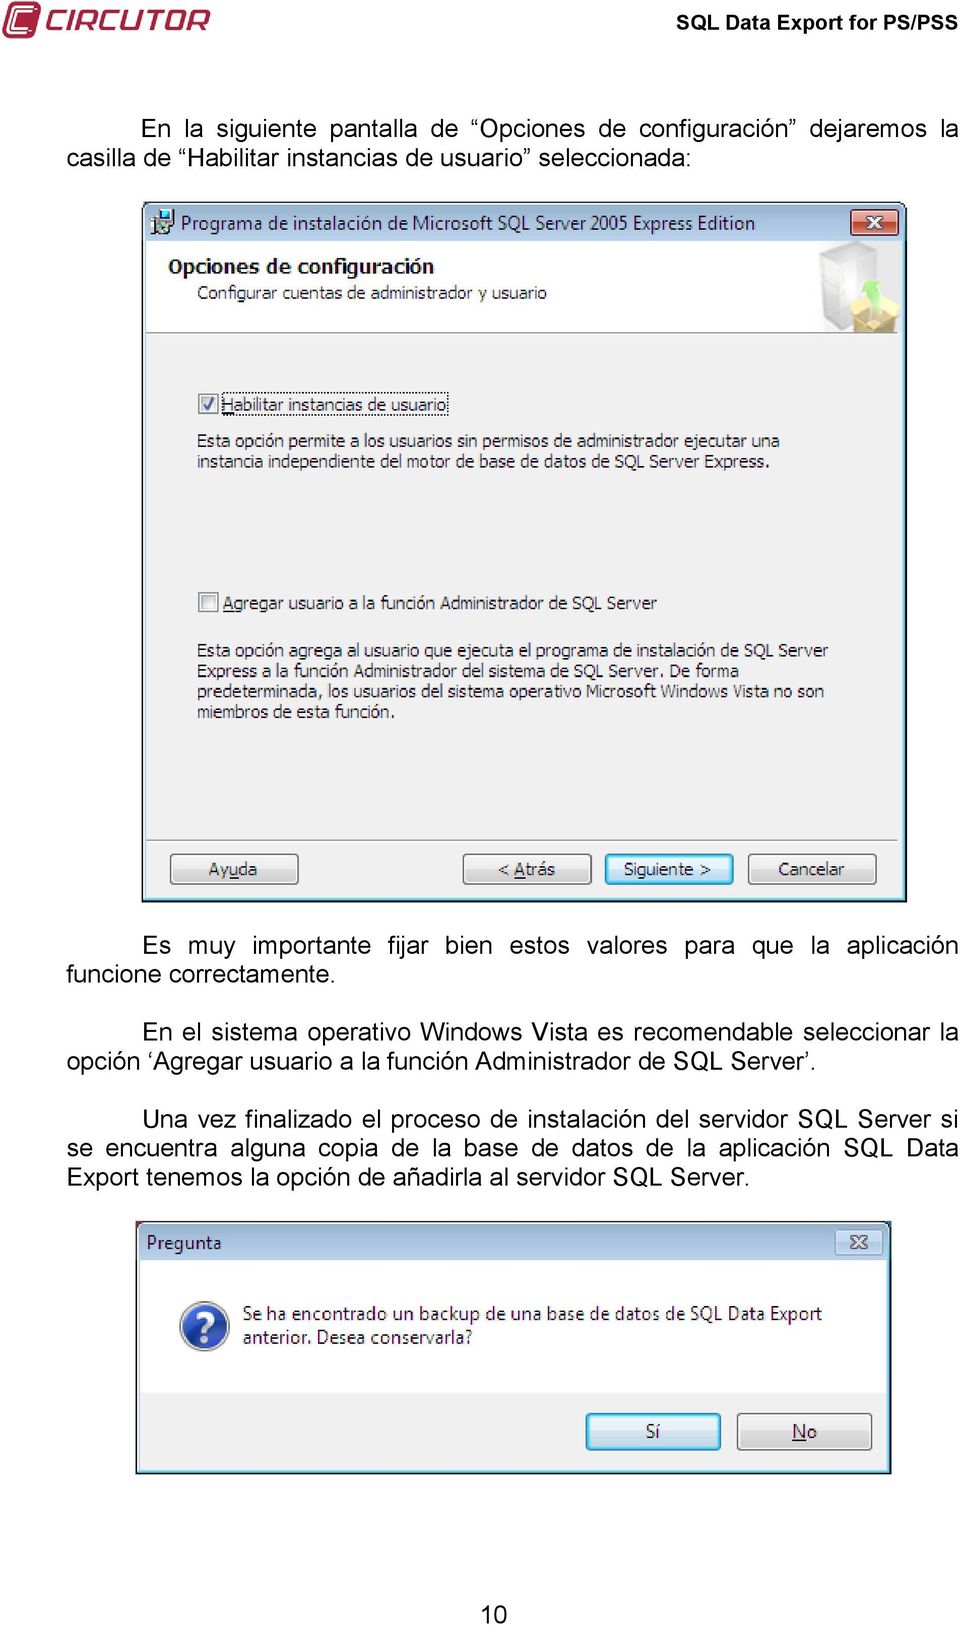 En el sistema operativo Windows Vista es recomendable seleccionar la opción Agregar usuario a la función Administrador de SQL Server.